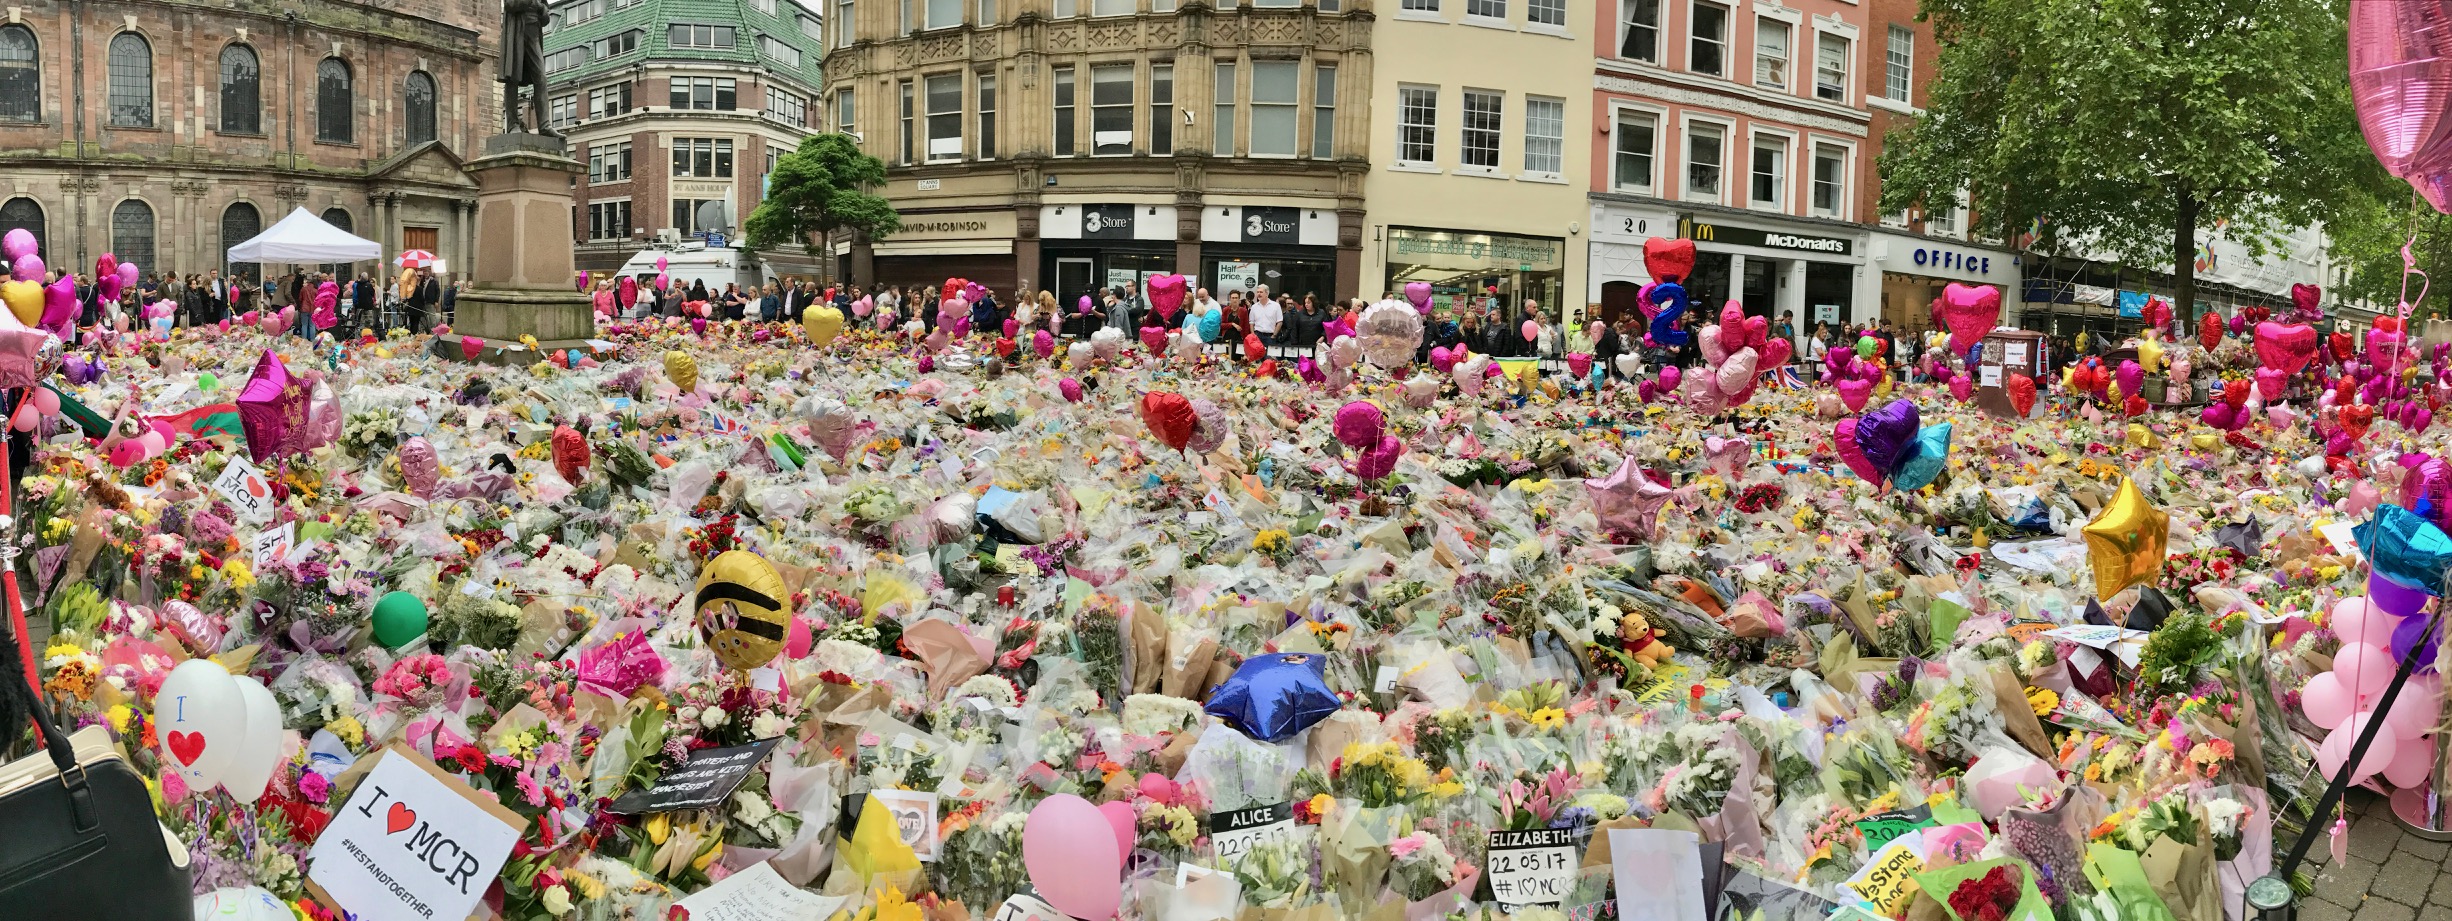 WDR Radio-Interview zum Anschlag von Manchester und Online-Trauer